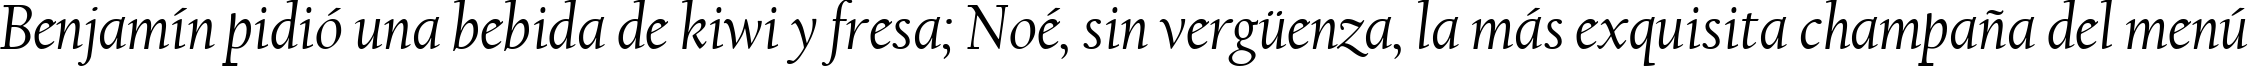 Пример написания шрифтом Californian FB Italic текста на испанском